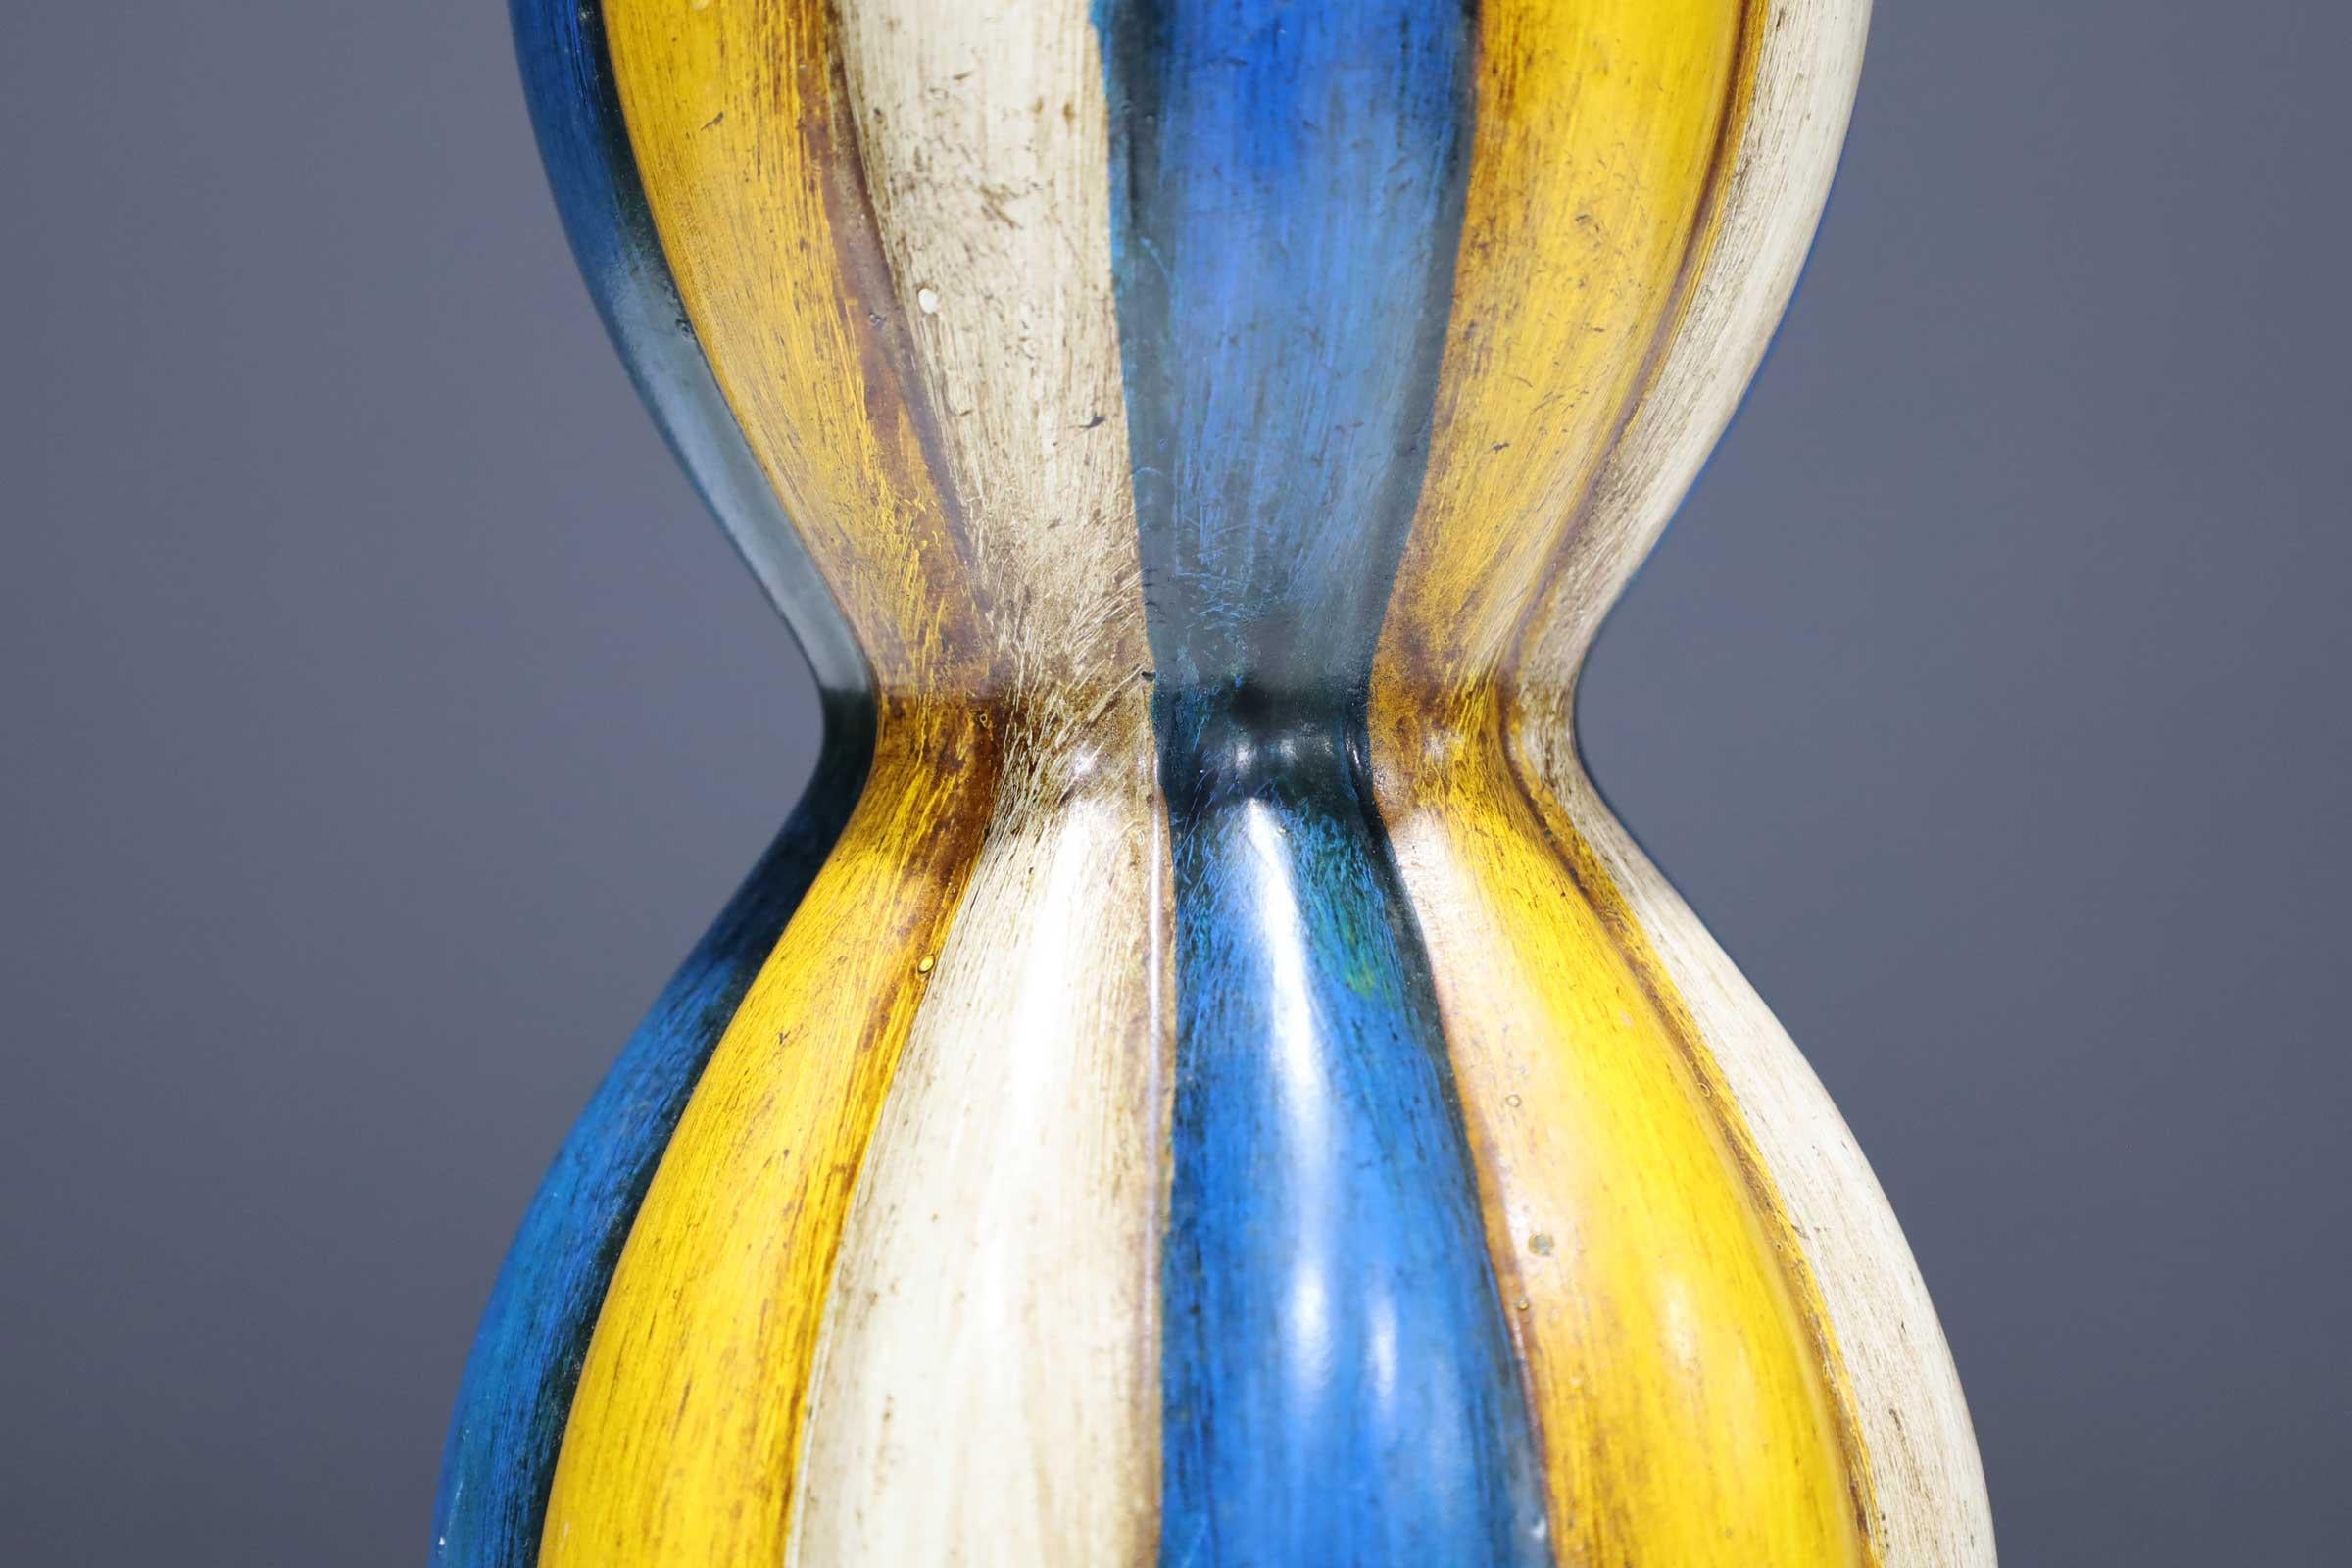 Schöne Farben auf dieser Keramikkürbis-Vase.